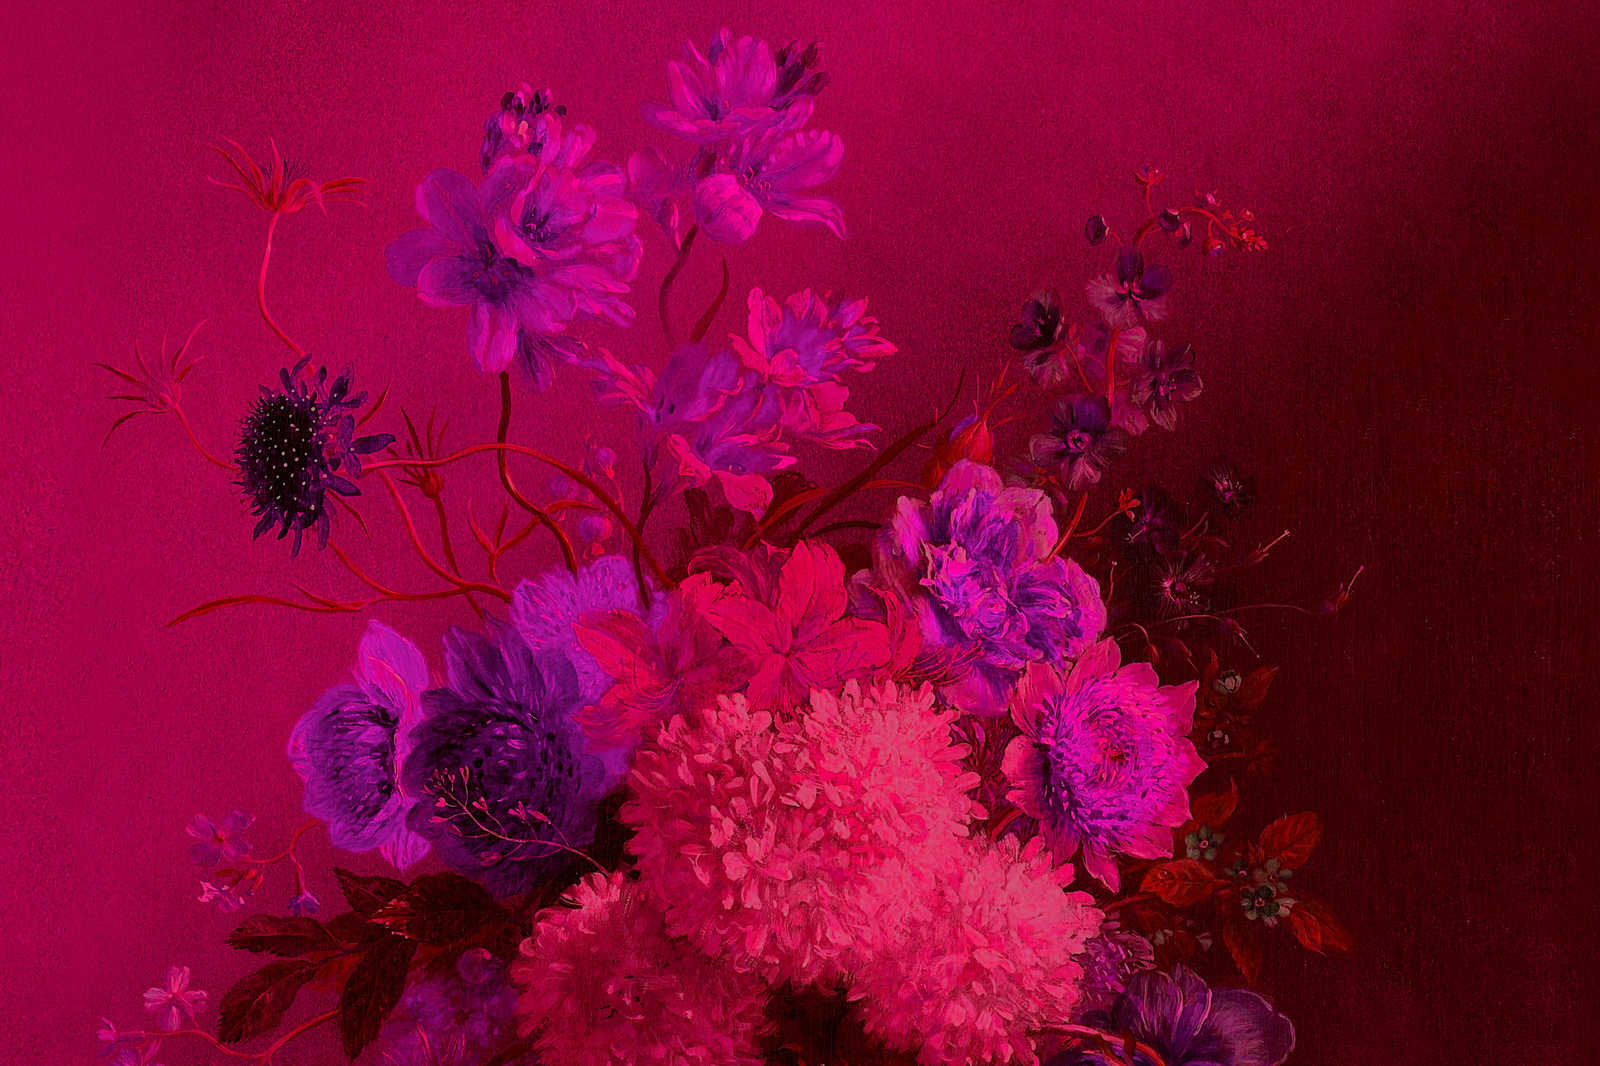             Pittura su tela al neon con fiori Natura morta | bouquet Vibran 2 - 0,90 m x 0,60 m
        